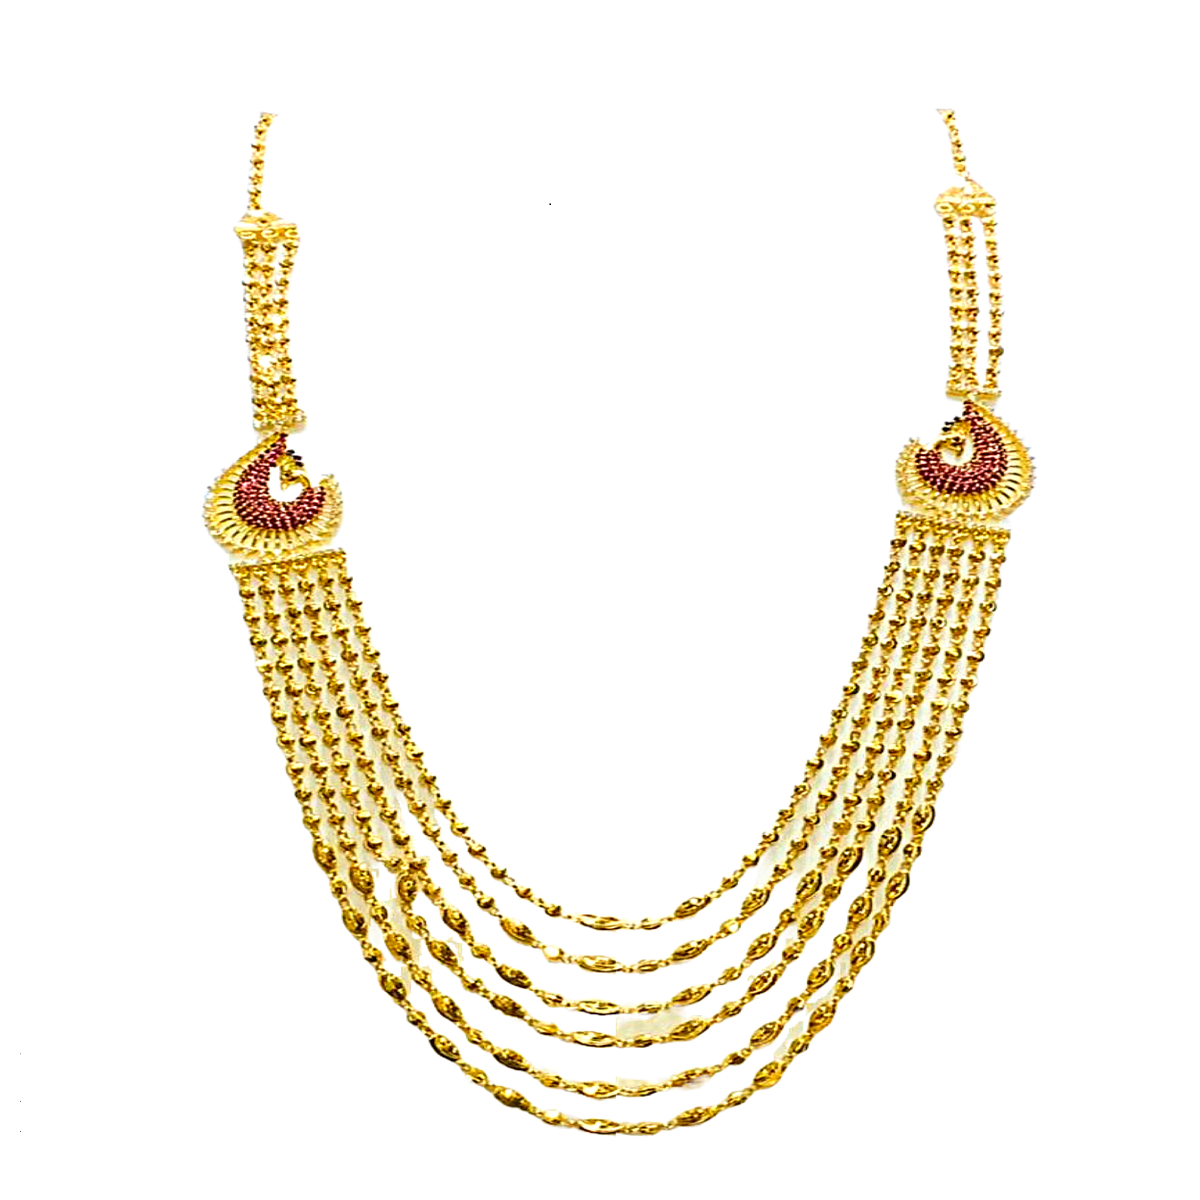 Shivaji gold chain